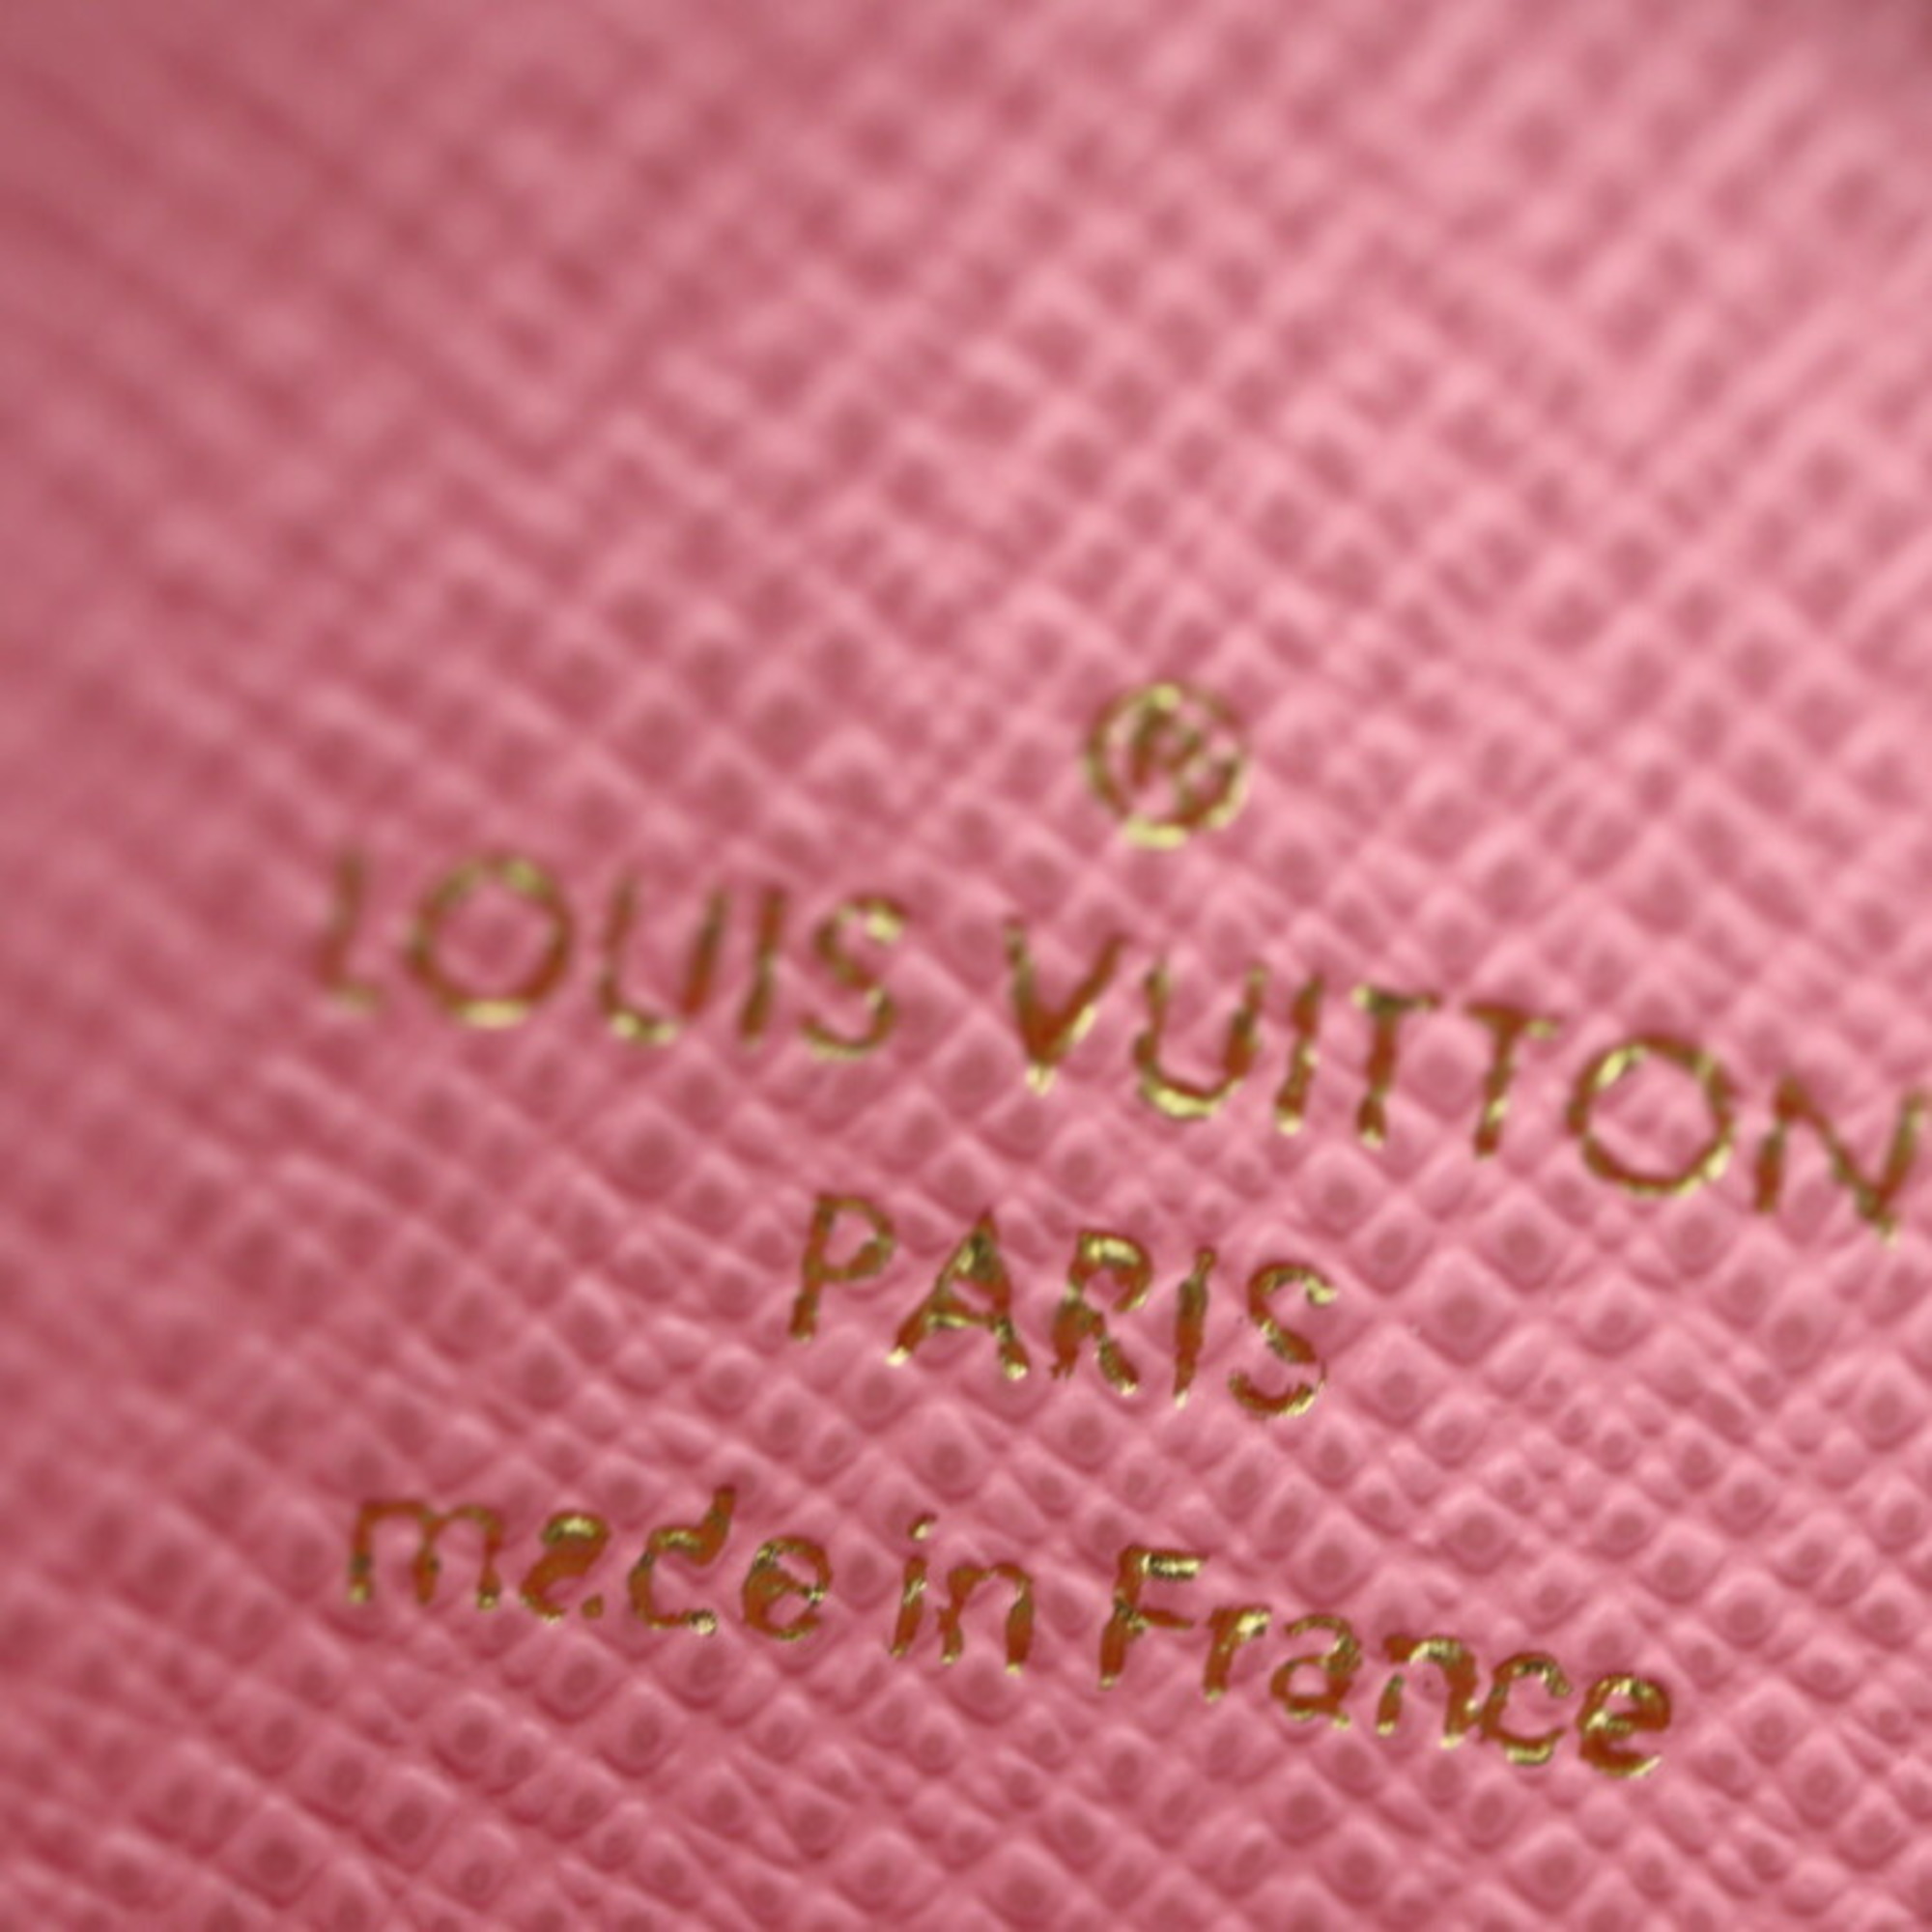 LOUIS VUITTON Louis Vuitton Monogram Portomonet Ron Vivienne Coin Case M69757 Canvas Brown Multicolor Gold Hardware Purse